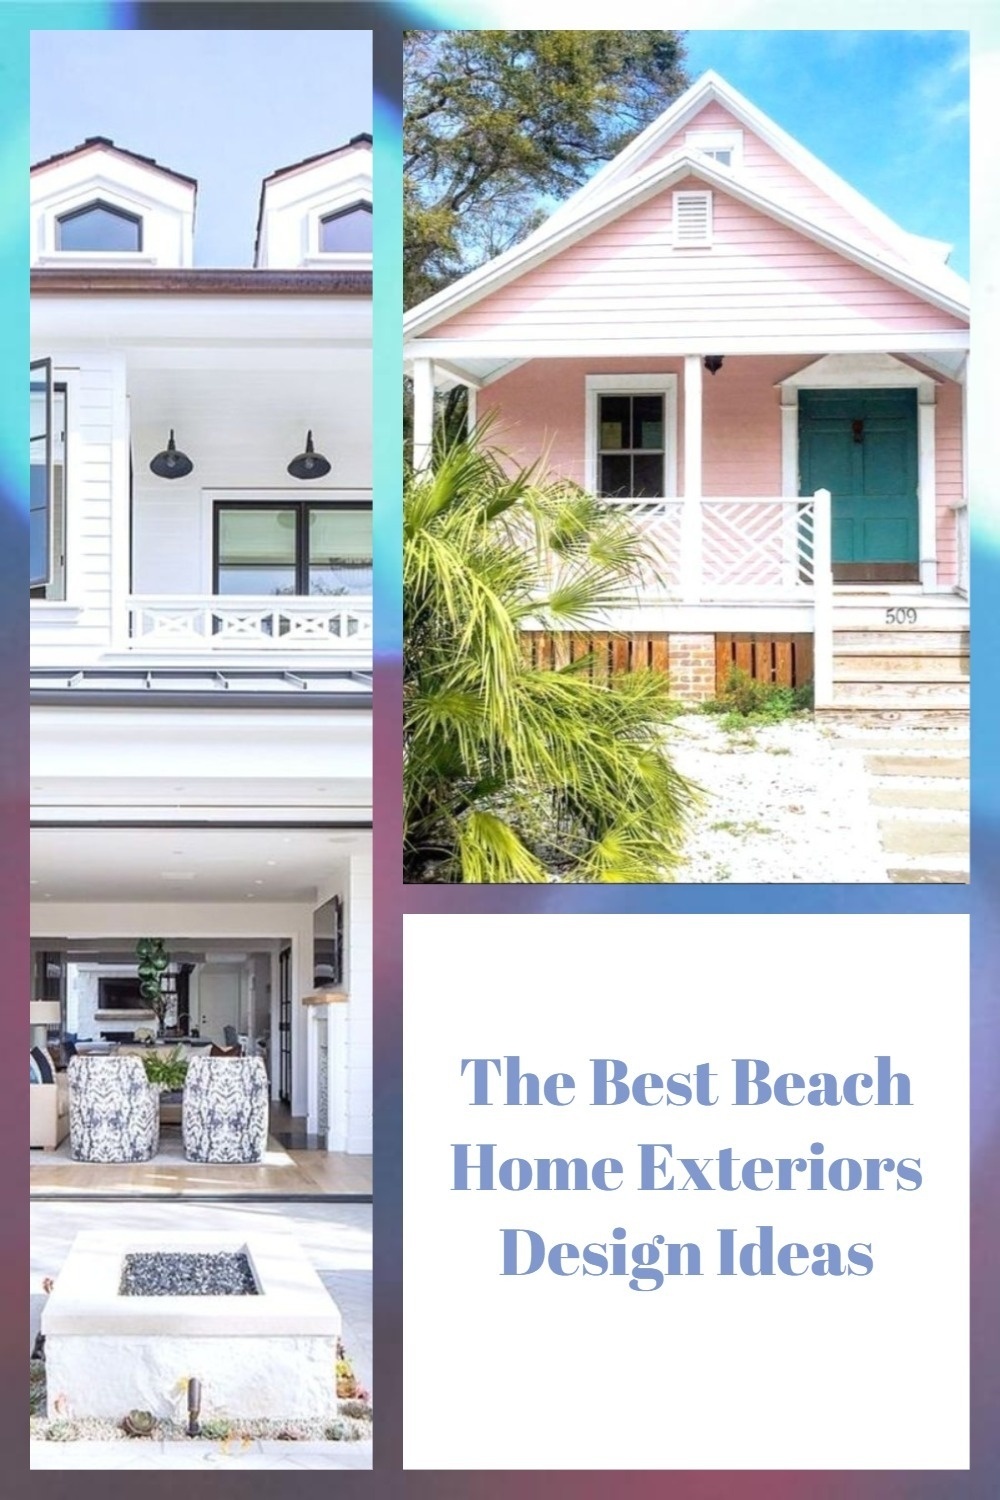 The Best Beach Home Exteriors Design Ideas